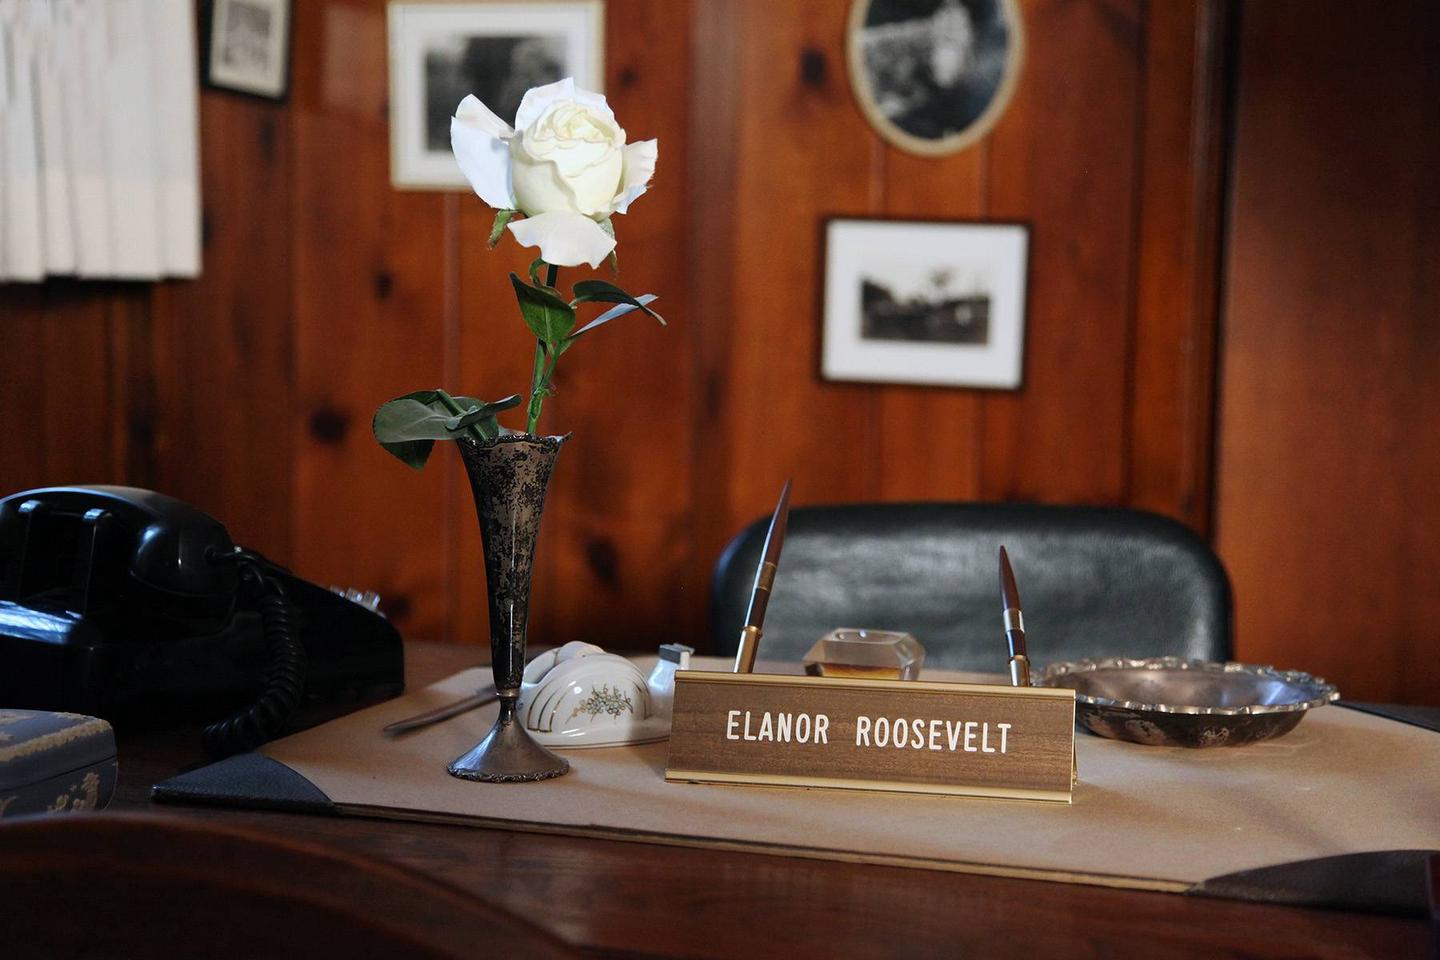 Mrs. Roosevelt's desk